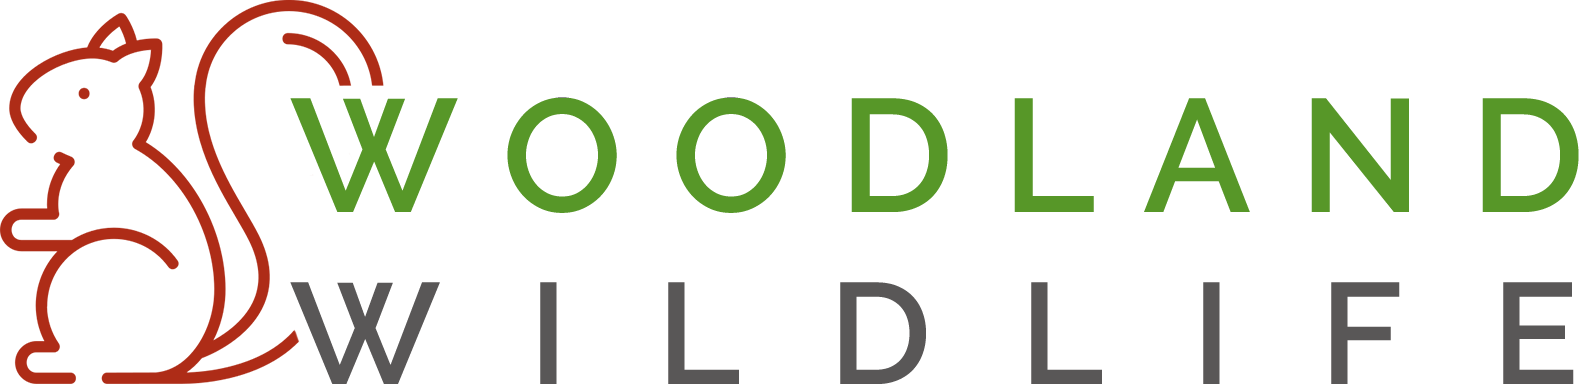 Woodland wildlife logo